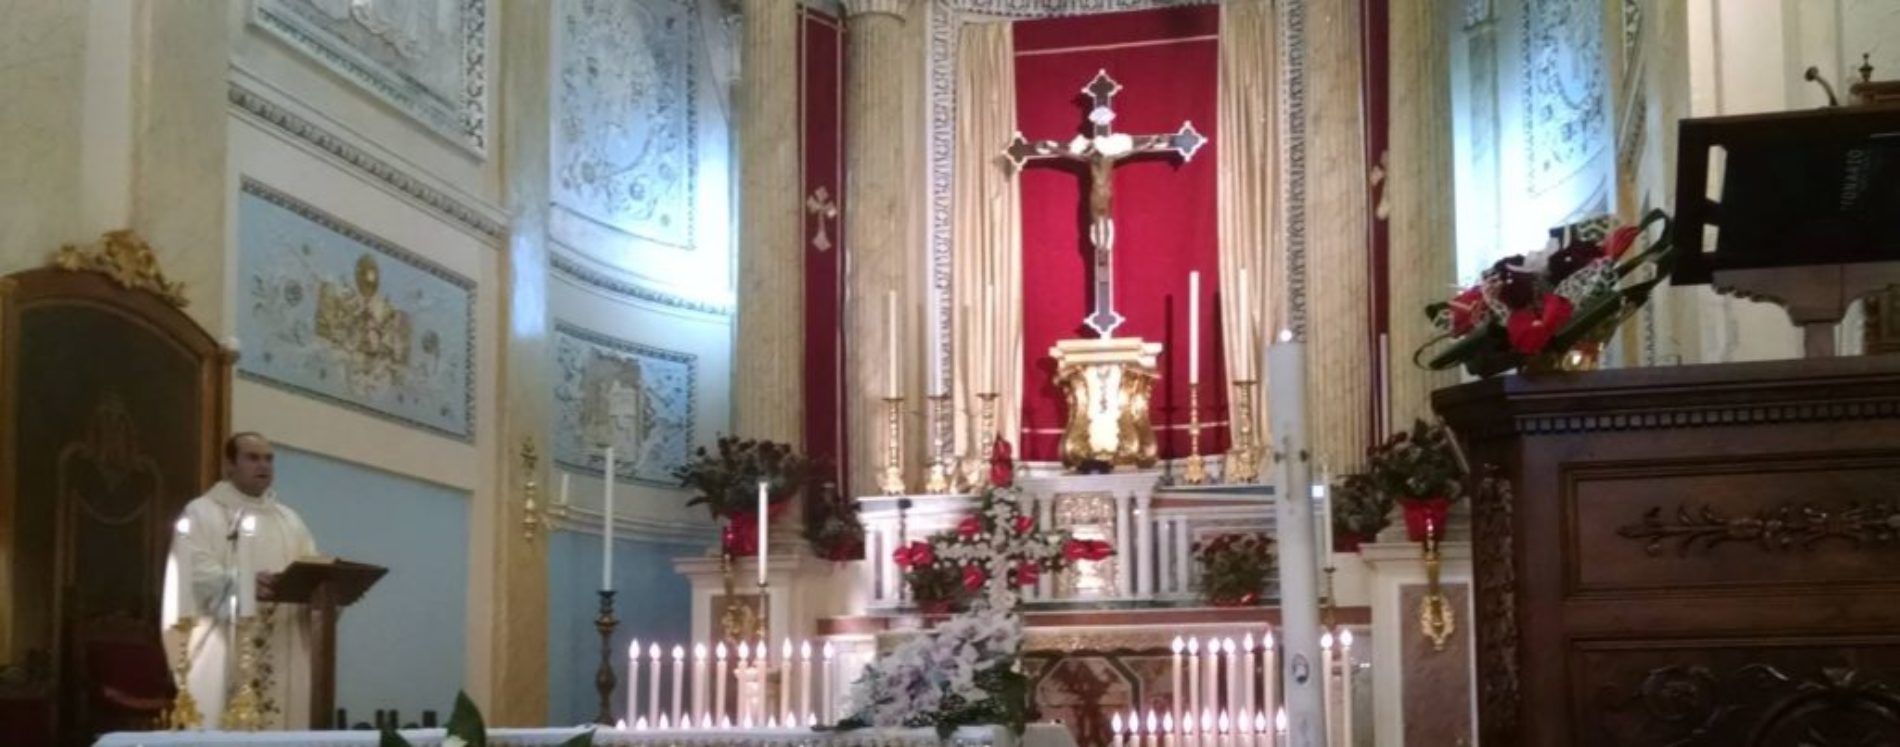 I quaranta ceri accesi collocati sotto il Crocifisso: una tradizione secolare che continua per la famiglia Ferreri